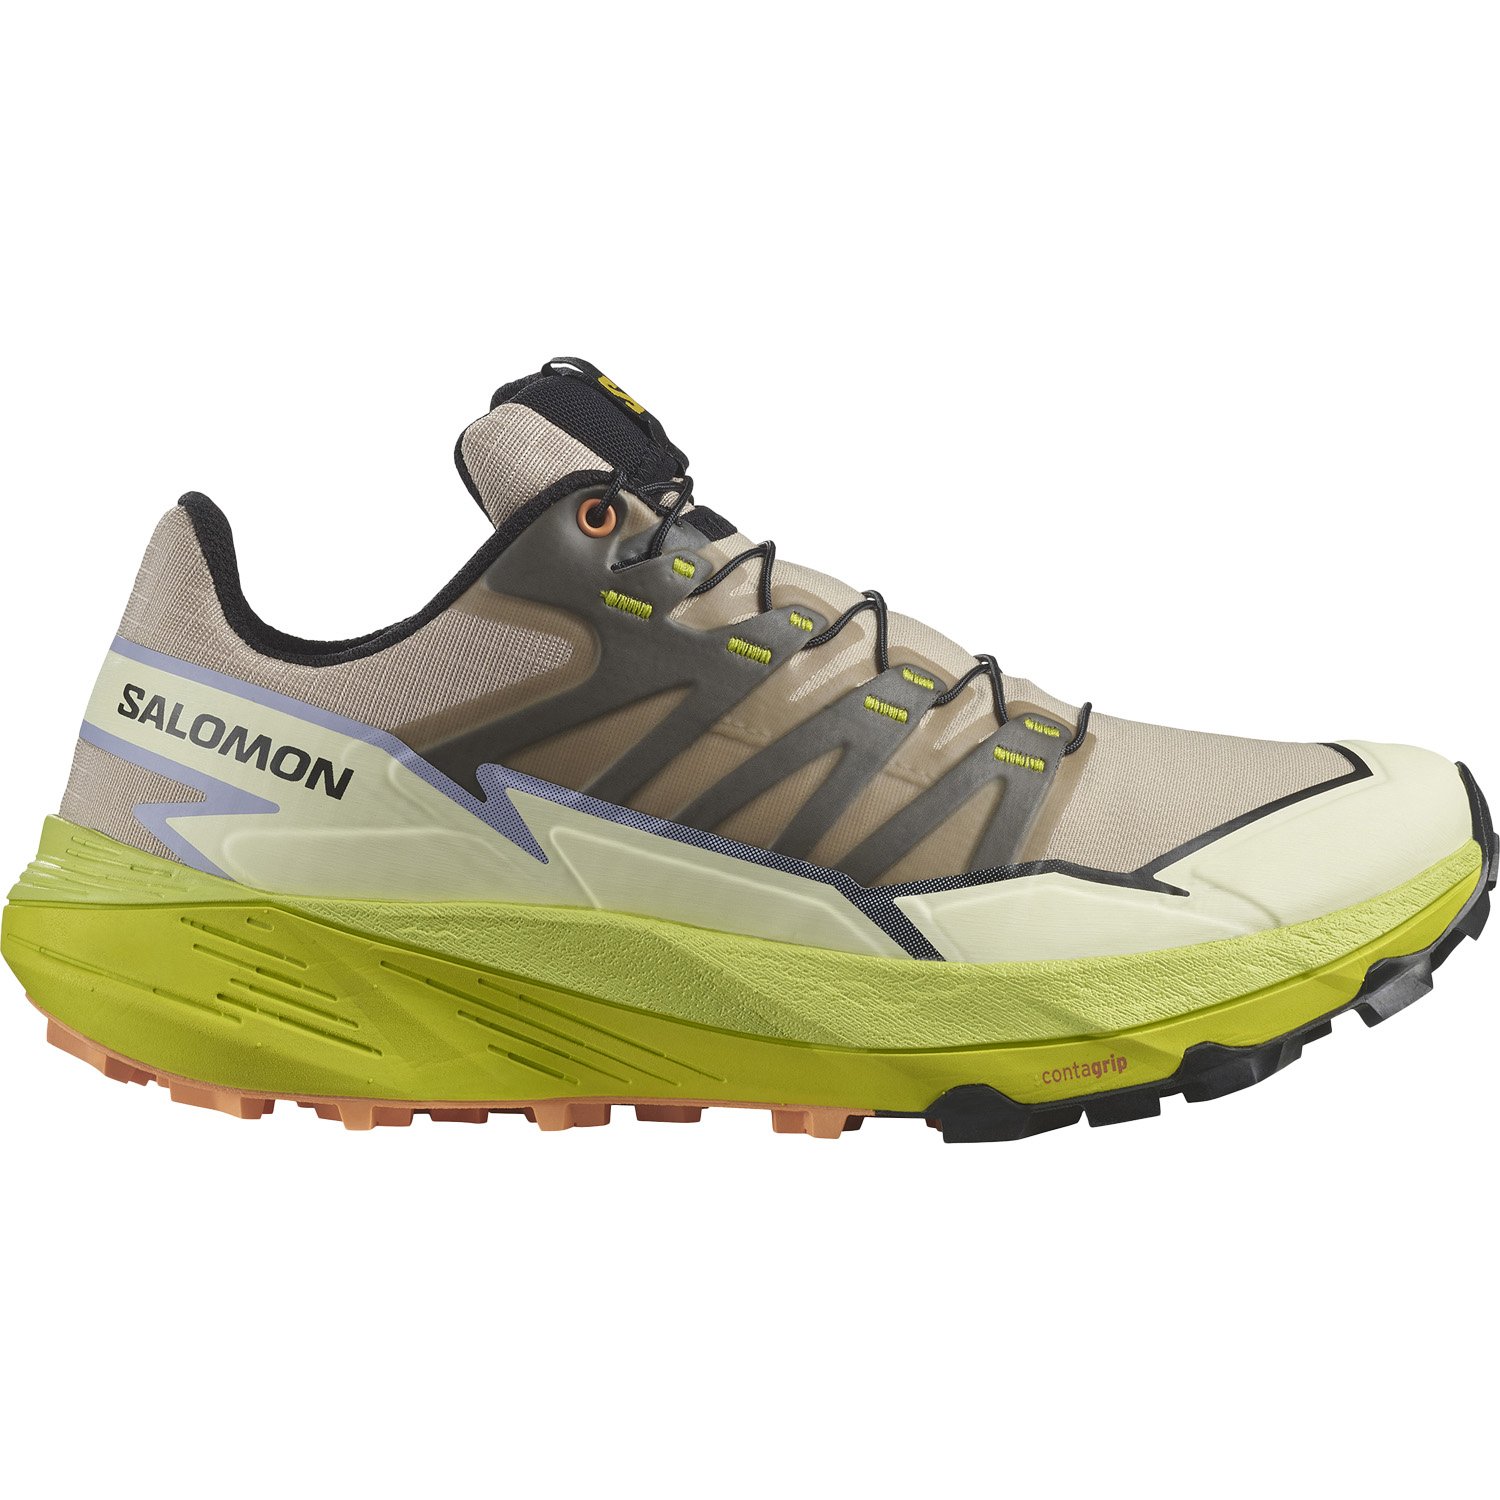 Salomon Thundercross Kadın Patika Koşu Ayakkabısı - Renkli - 1